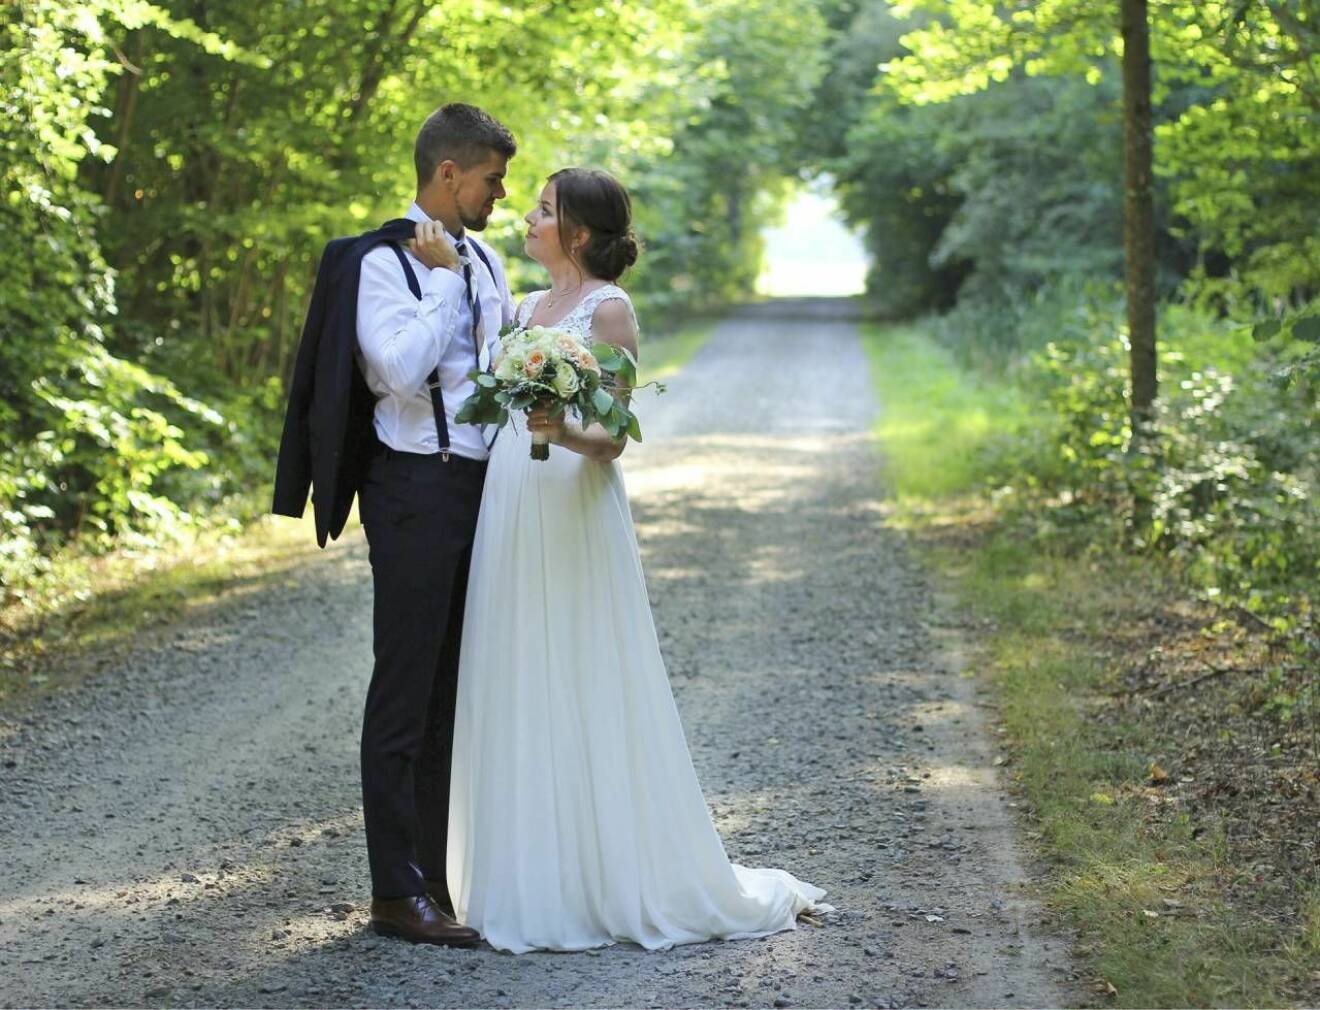 Andreas och Sofie under sitt bröllop sommaren 2018